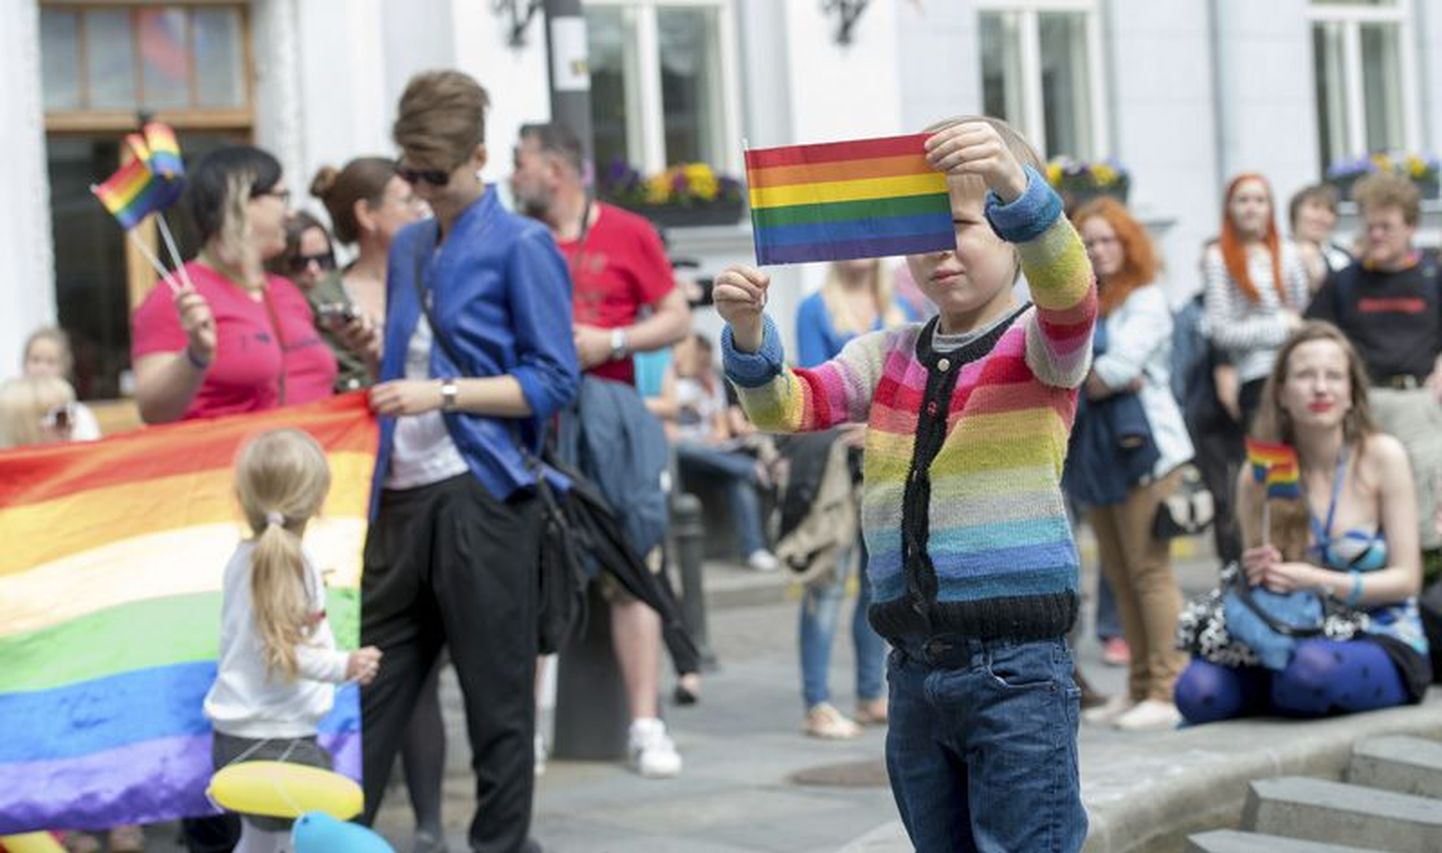 Baltikumi seksuaalvähemusi ühendav festival toimus Tallinnas 2014. aastal ning jõuab Eesti pealinna taas sel suvel. Rakveres nii suurelt ette ei võeta, kuid kavad siin seksuaalvähemuste filmifestival korraldada, on kired lõkkele löönud.